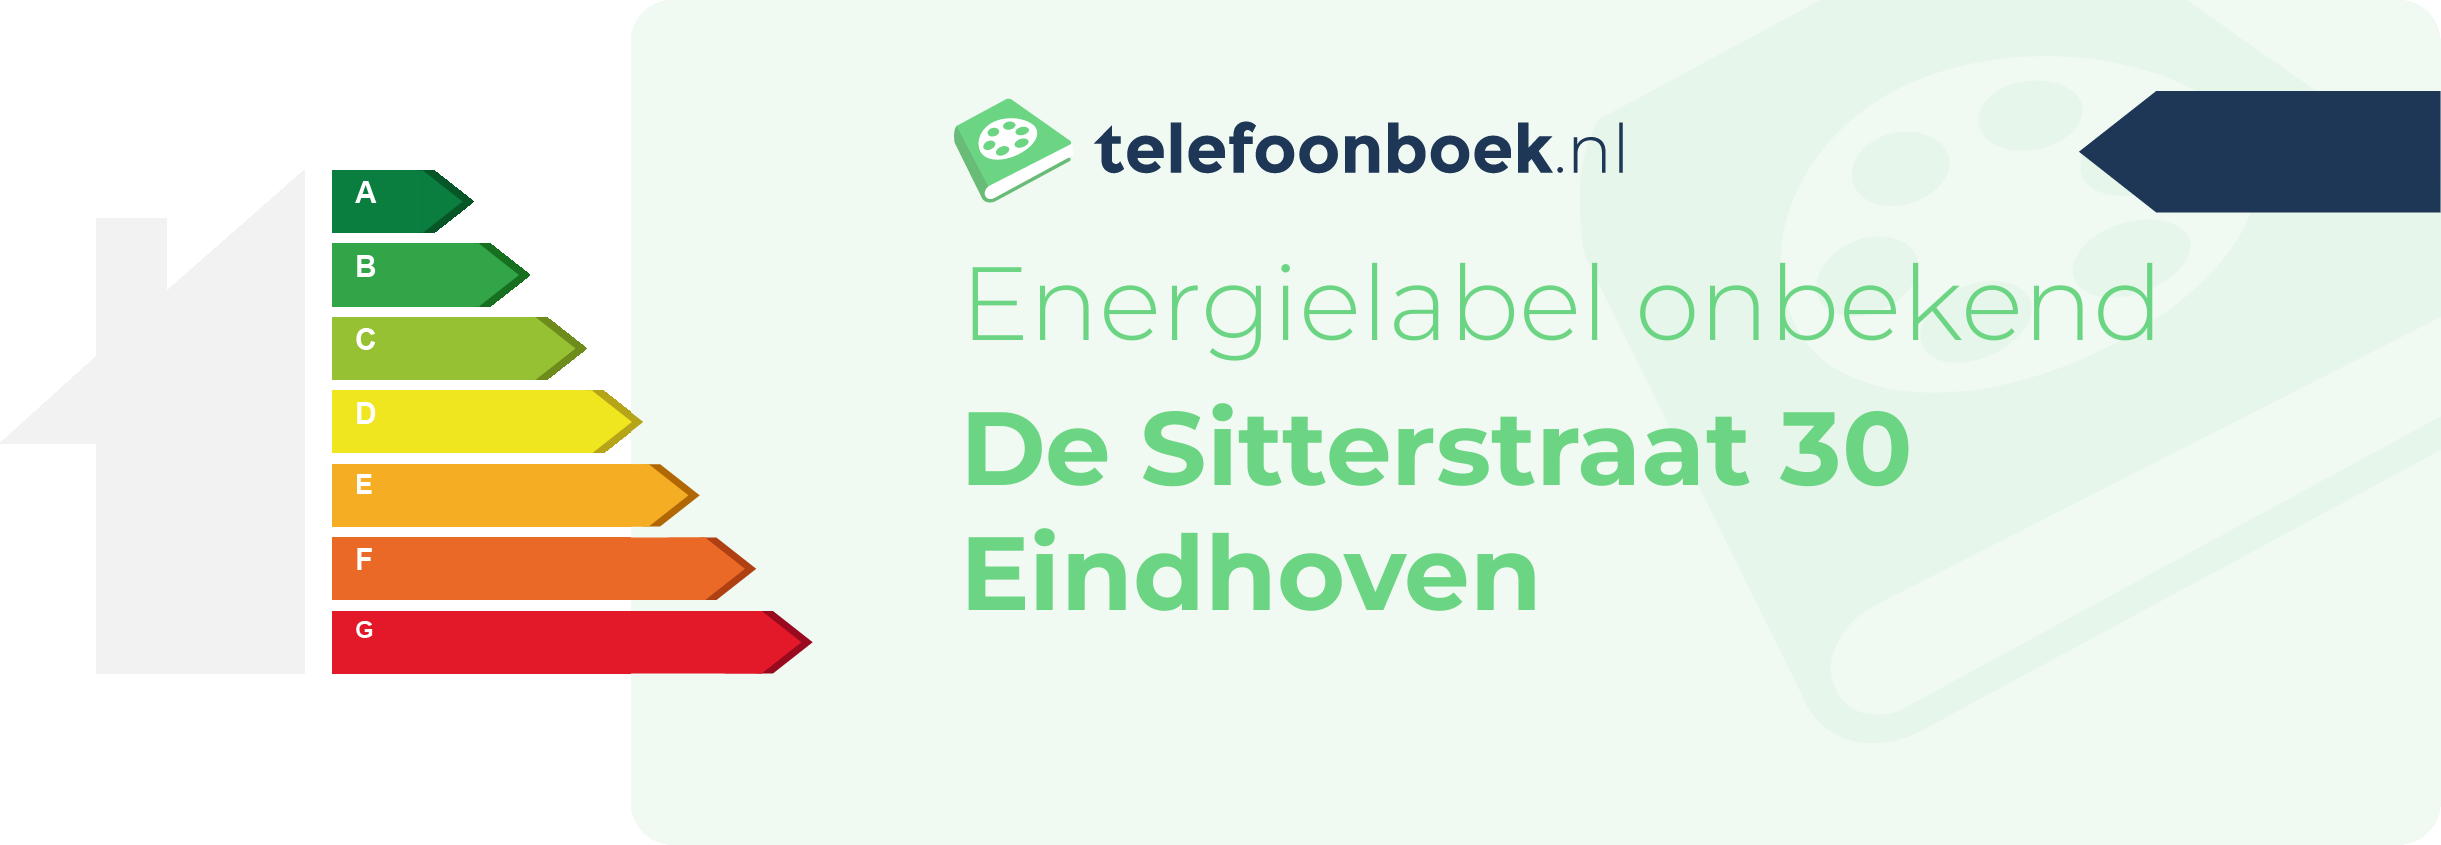 Energielabel De Sitterstraat 30 Eindhoven